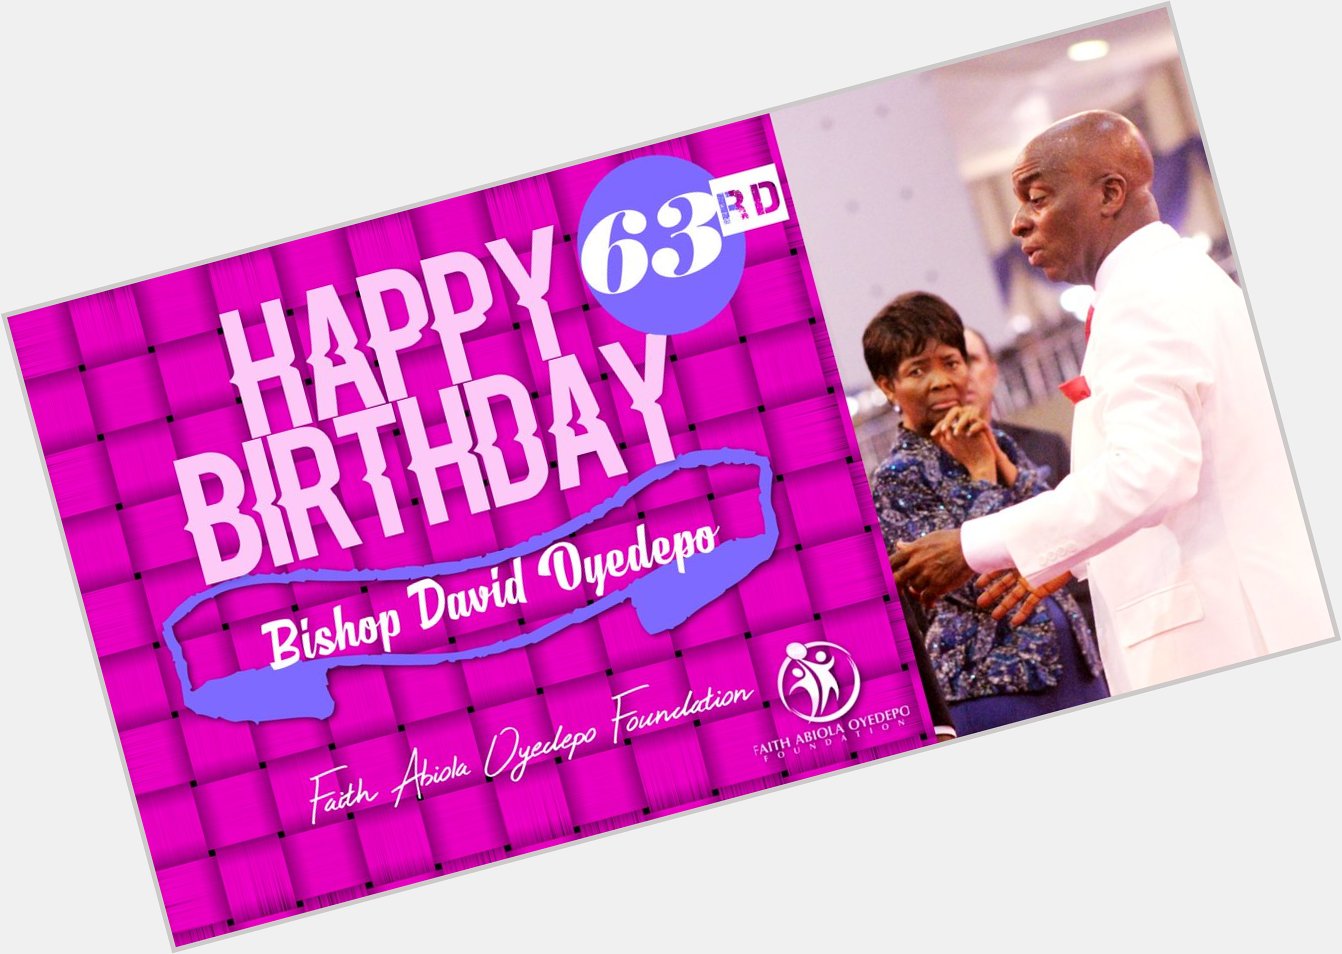 Happy Birthday to Bishop David Oyedepo!     